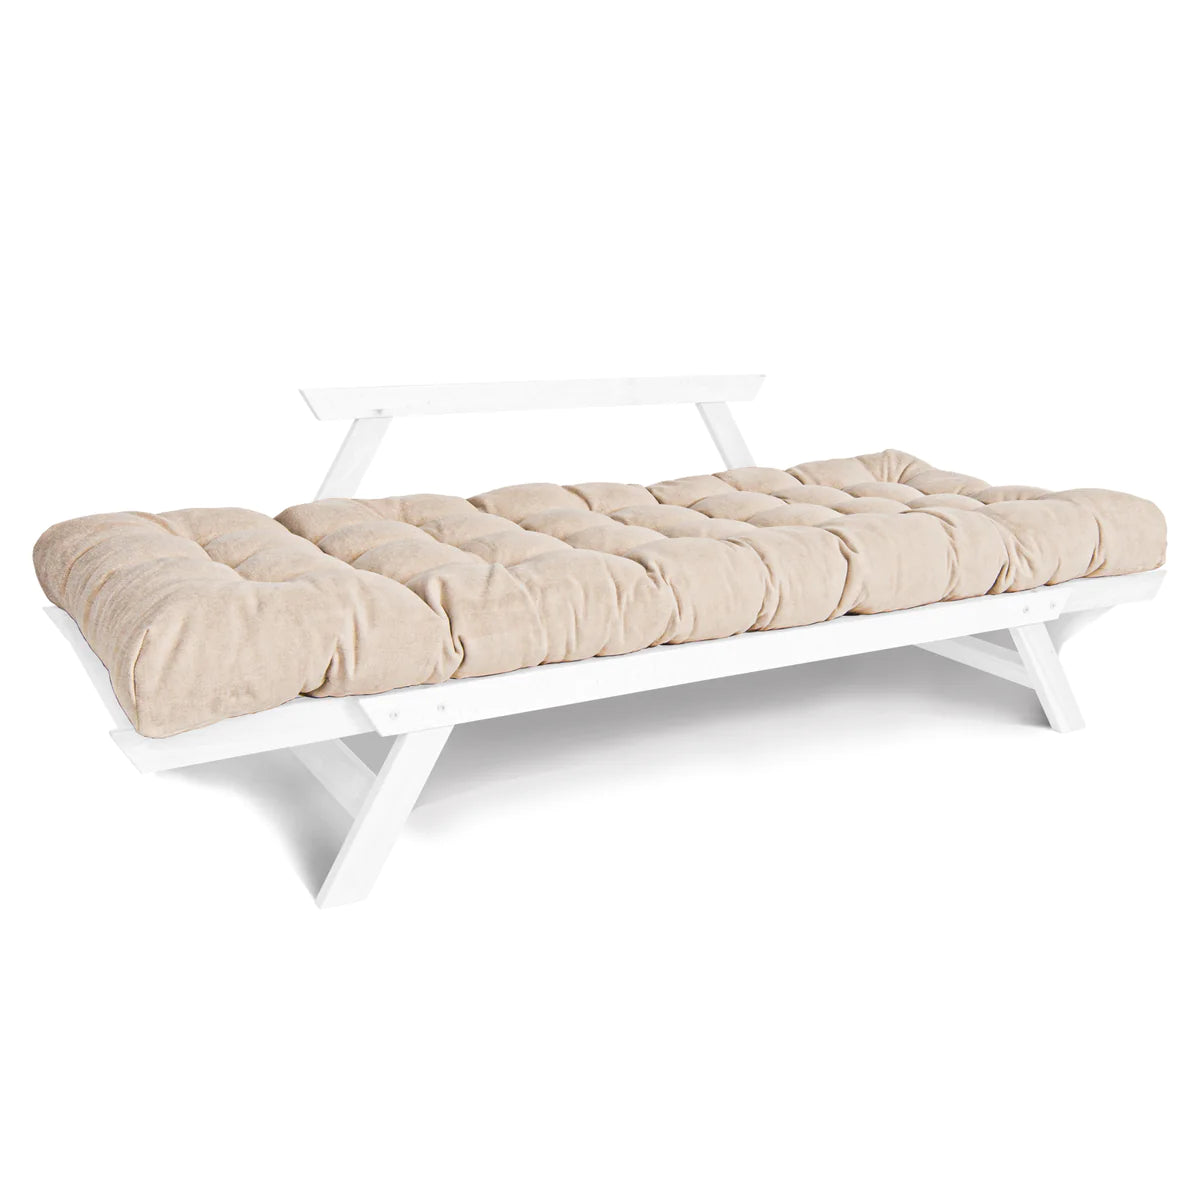 Kiara sofa bed / Διθέσιος καναπές κρεβάτι